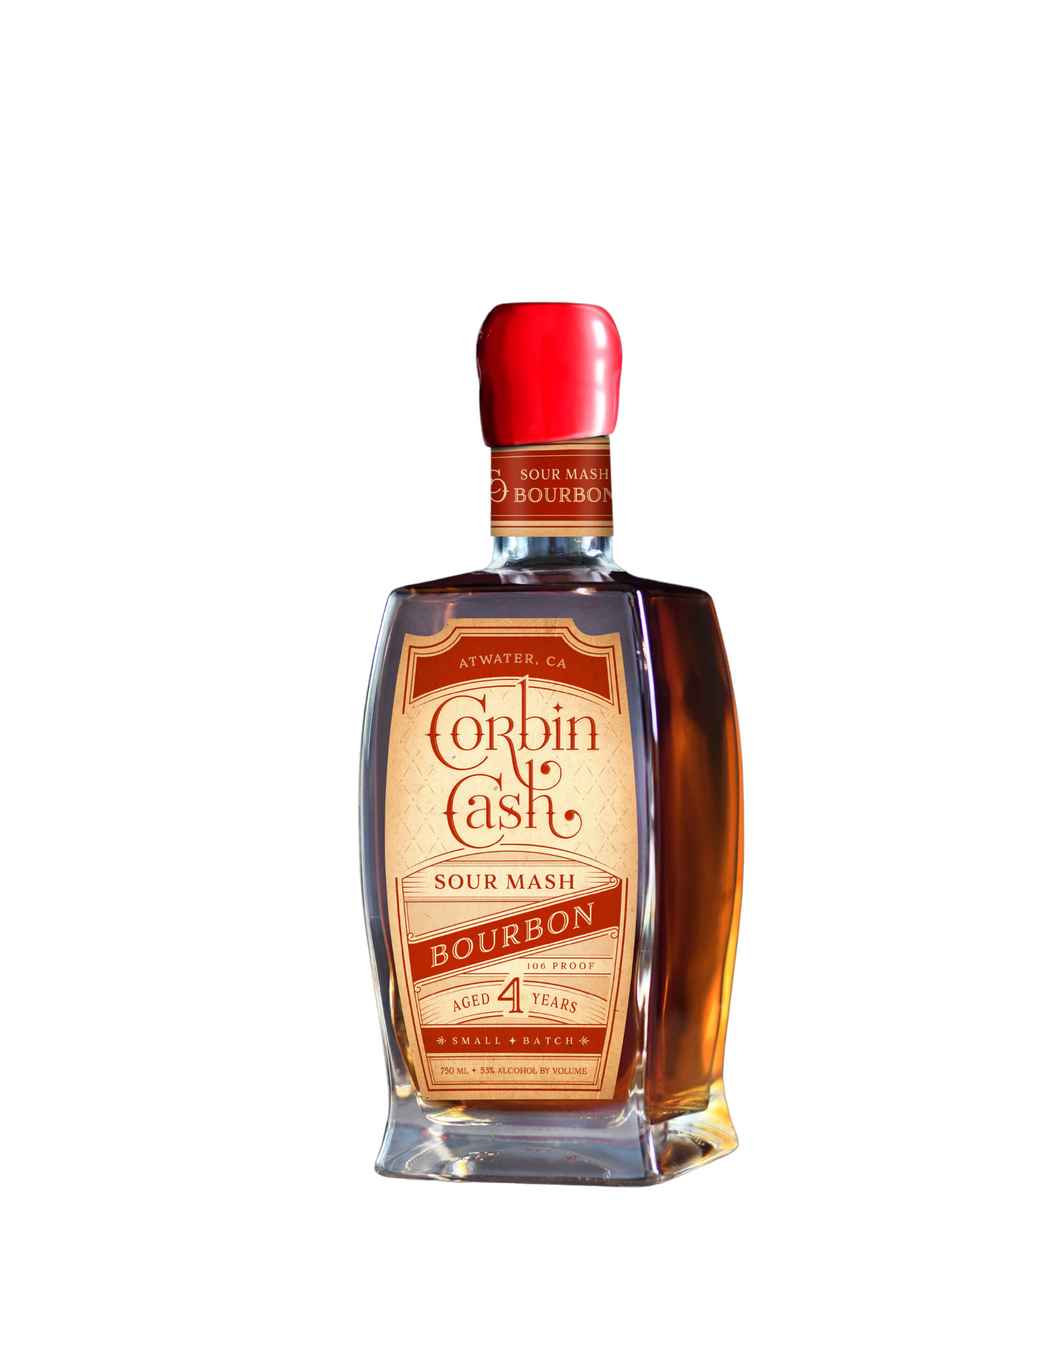 Corbin Cash Sour Mash Bourbon - 375 ml